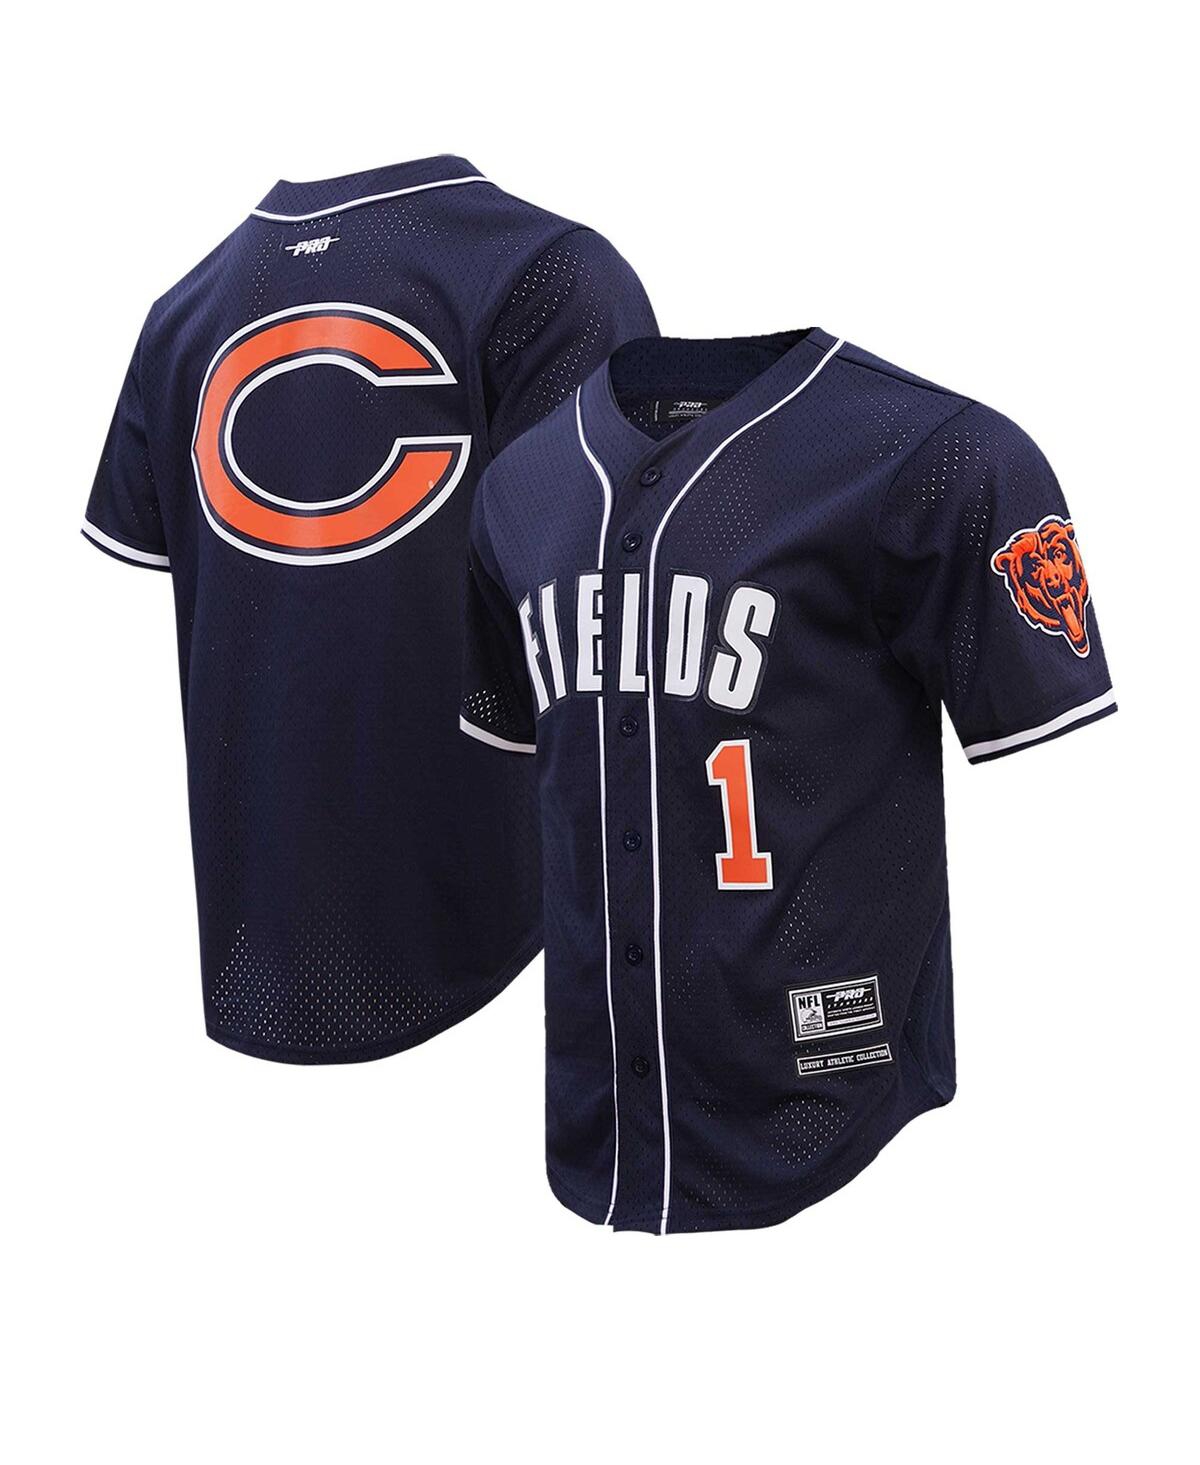 Shop Pro Standard Men's  Justin Fields Navy Chicago Bears Baseball Player Button-up Shirt